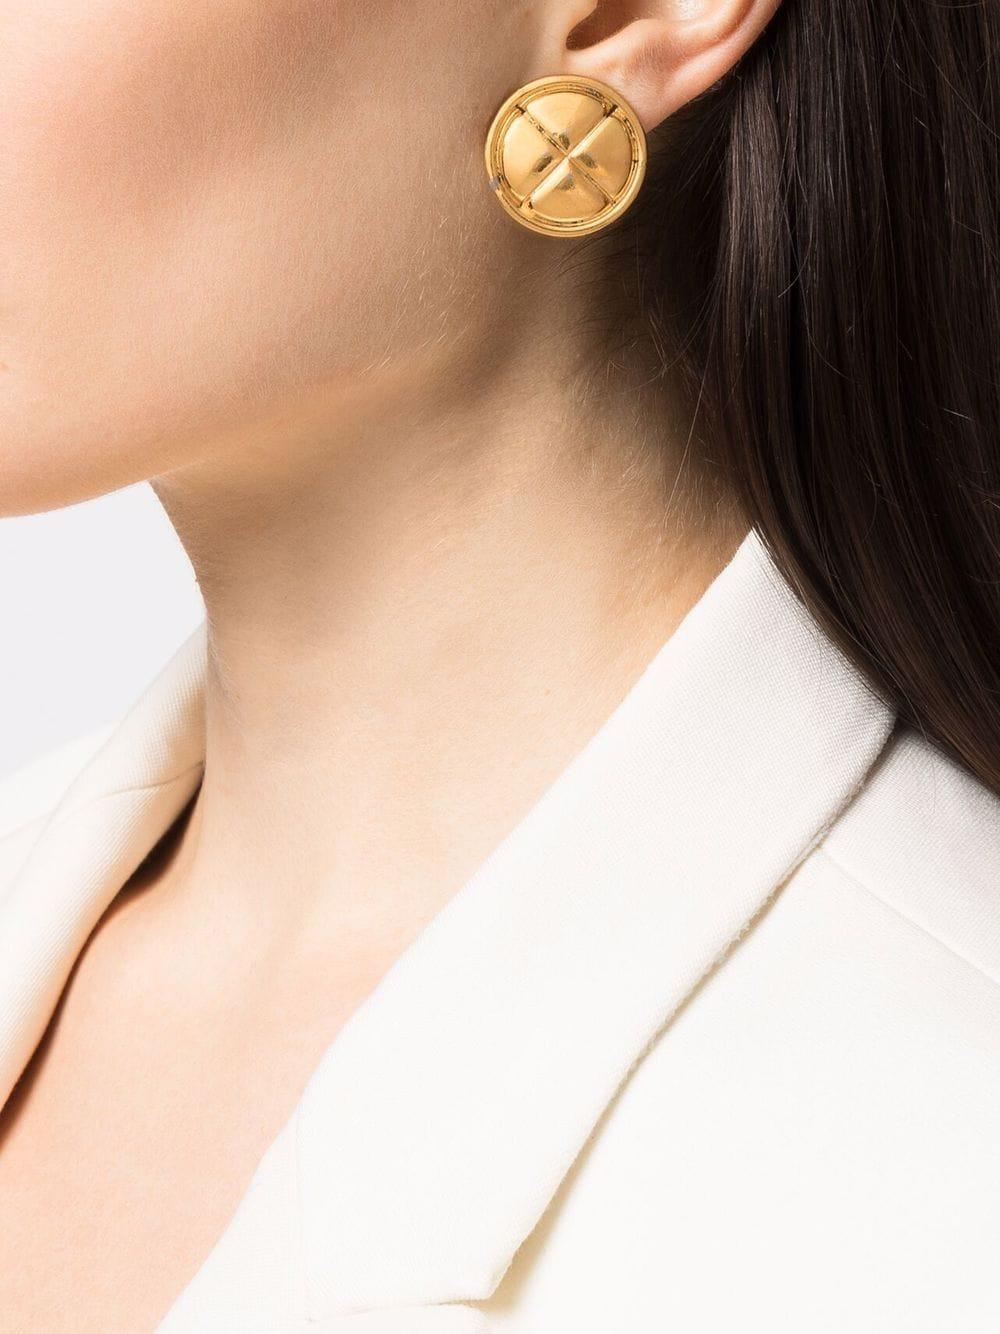 Chanel-Ohrringe aus den 1980er-Jahren mit goldfarbenem Metall in Diamantsteppung. Diese Ohrringe zeigen eines der ikonischsten Merkmale der Maison Maison, die Diamantsteppung, einen Clipverschluss und eine entsteinte Plakette auf der Rückseite.